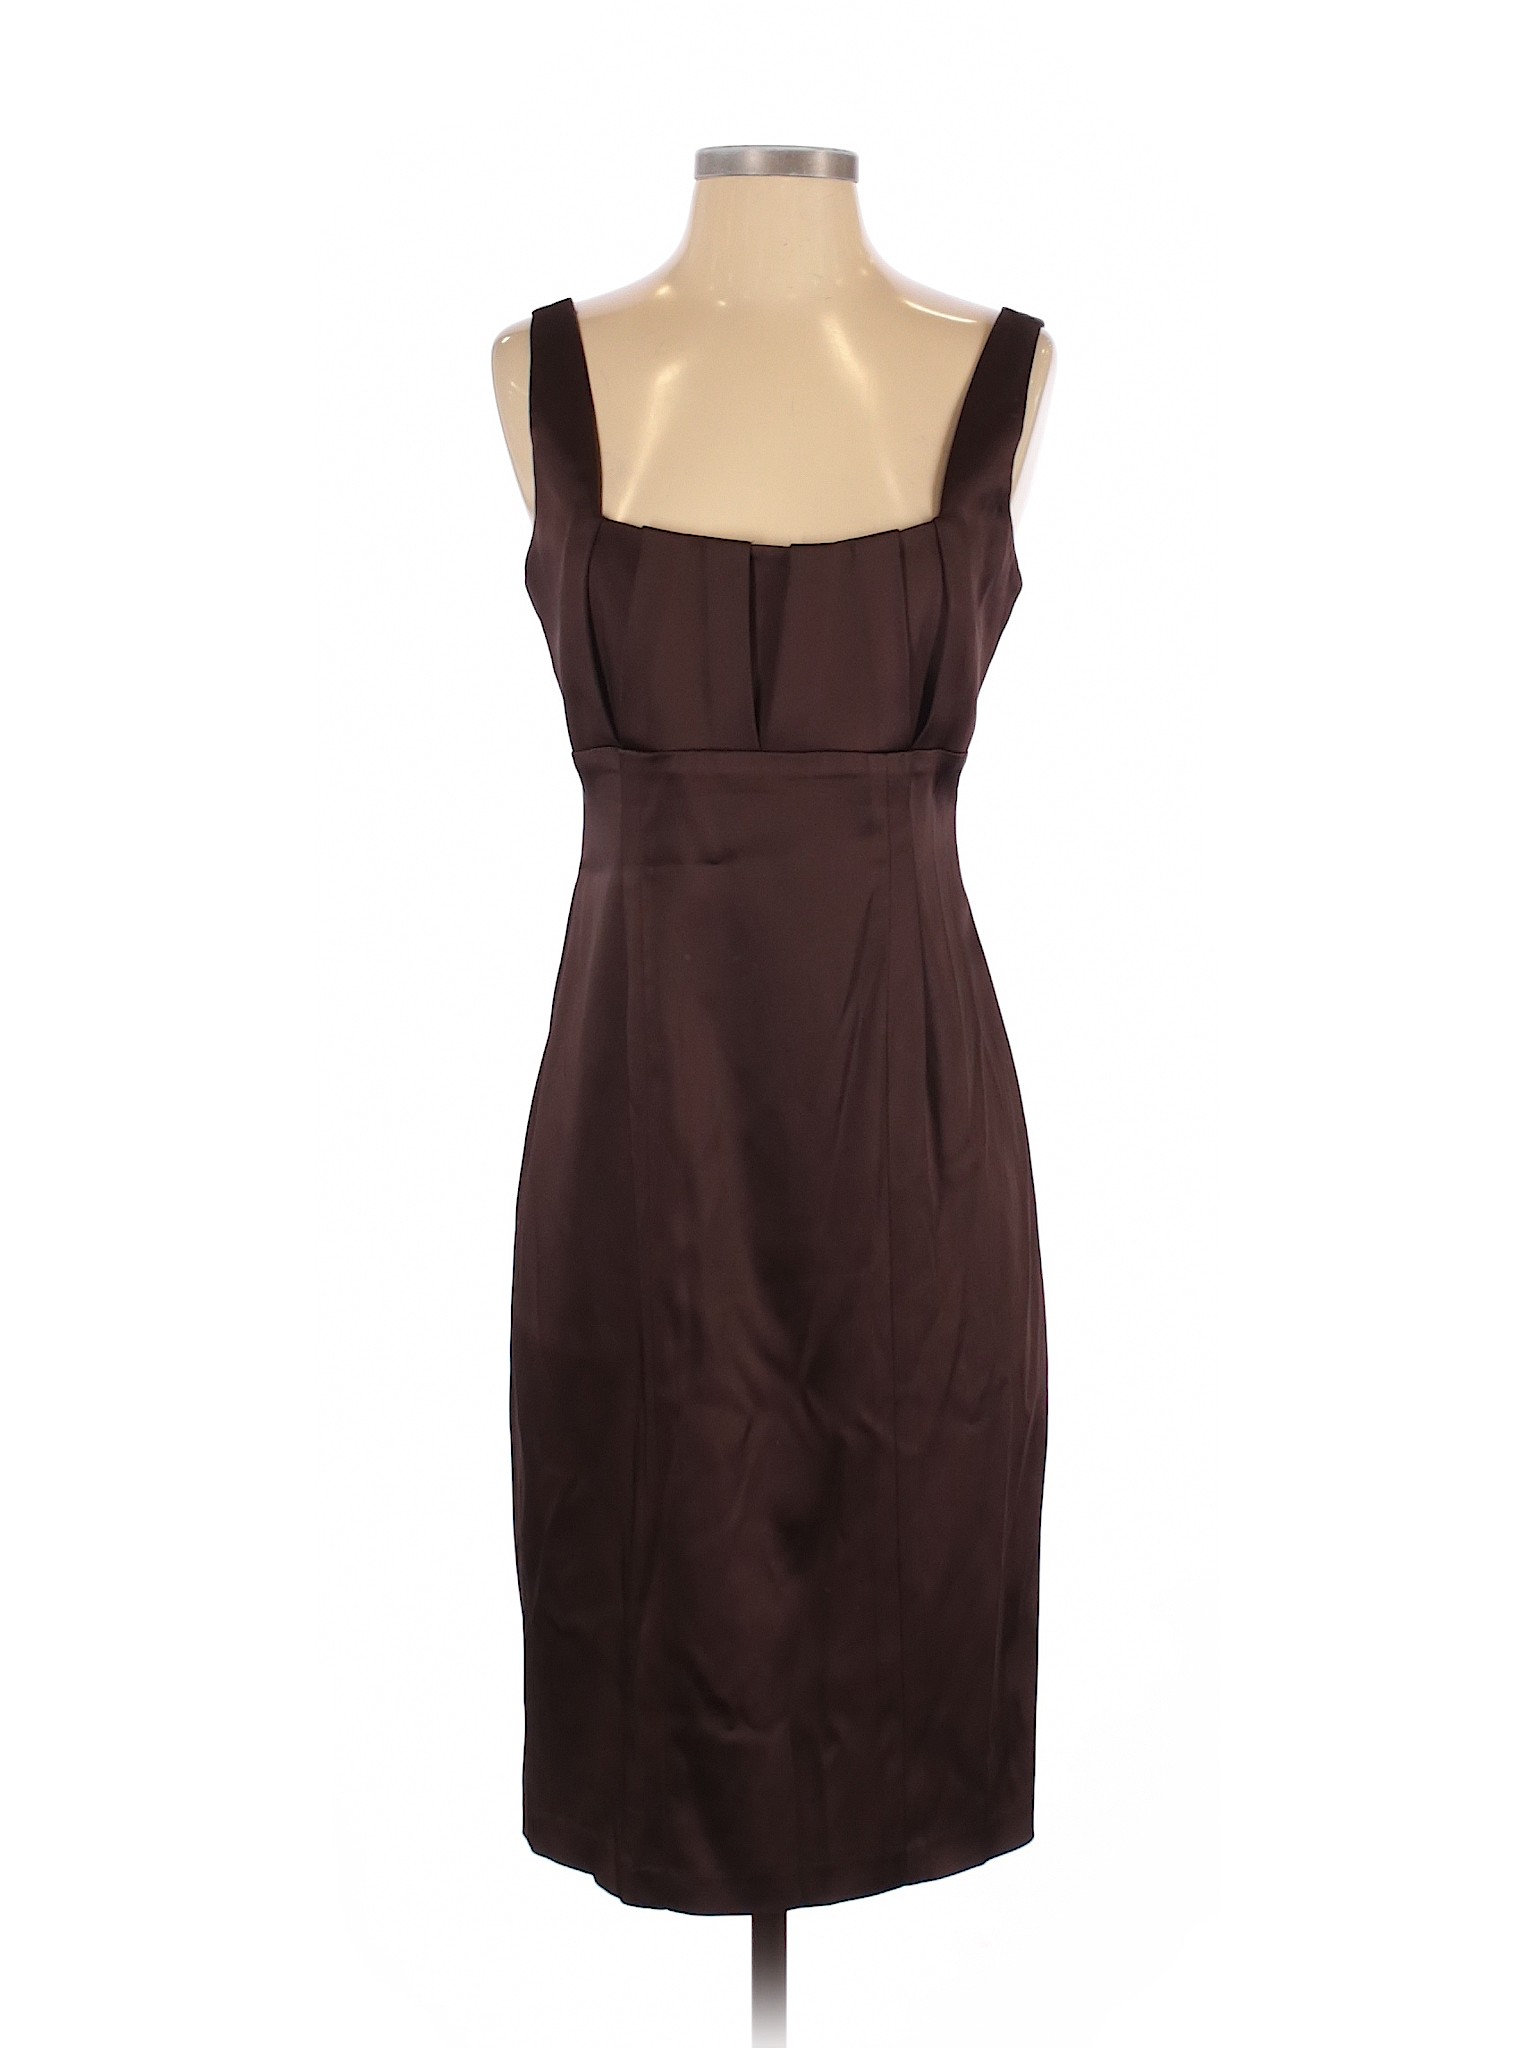 Calvin Klein Women Brown Cocktail Dress 6 | eBay